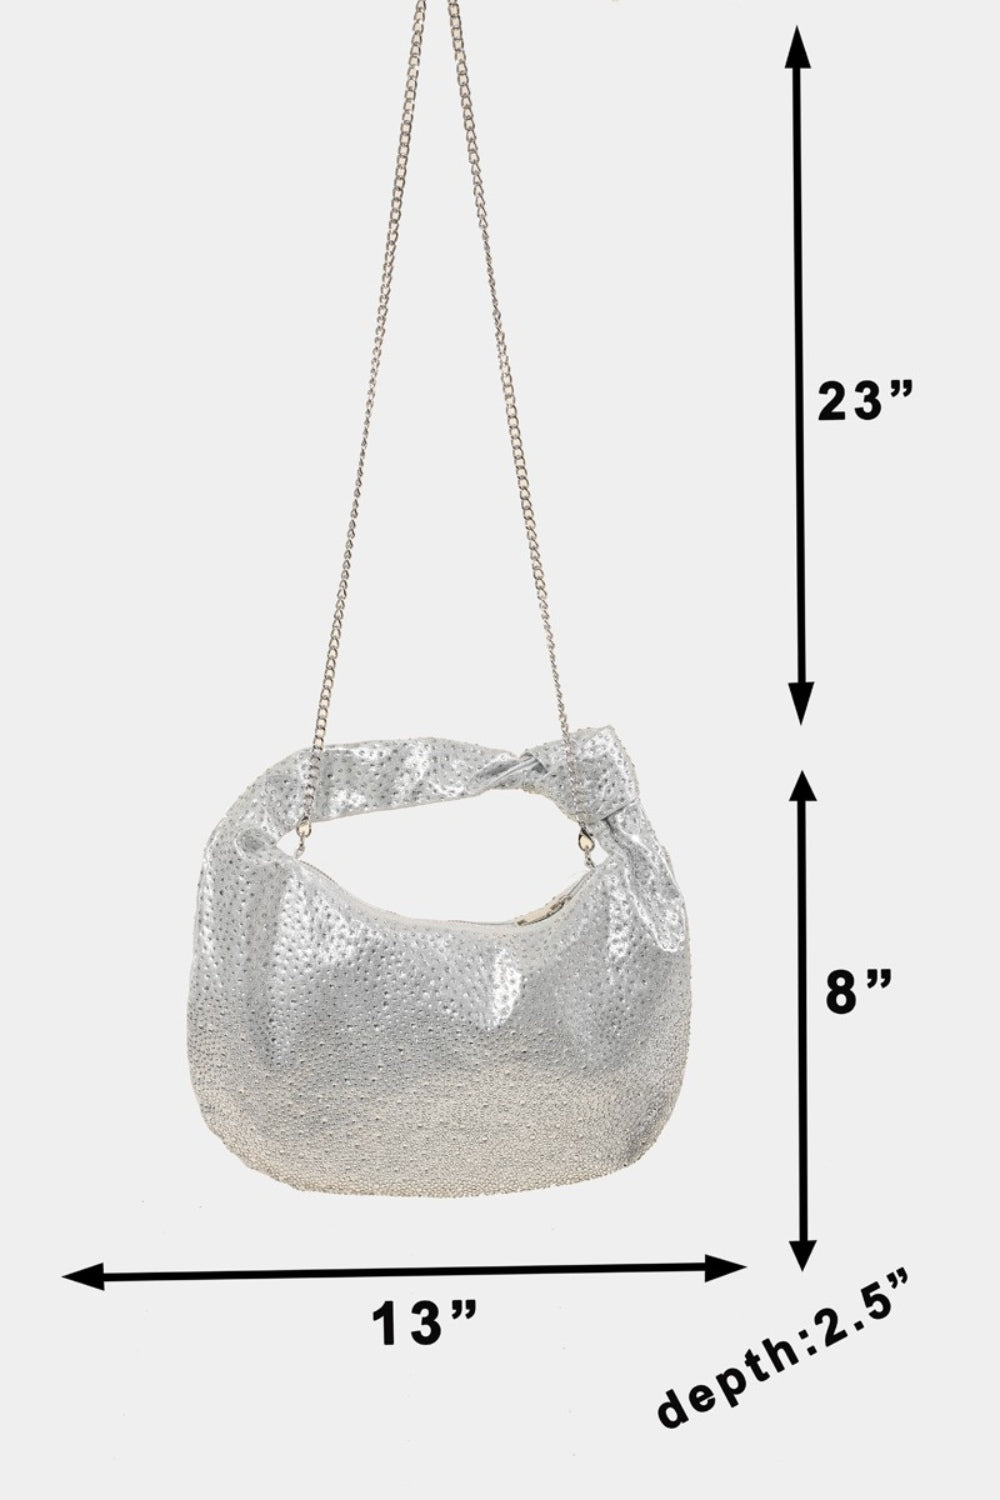 Fame Rhinestone Studded Handbag | us.meeeshop